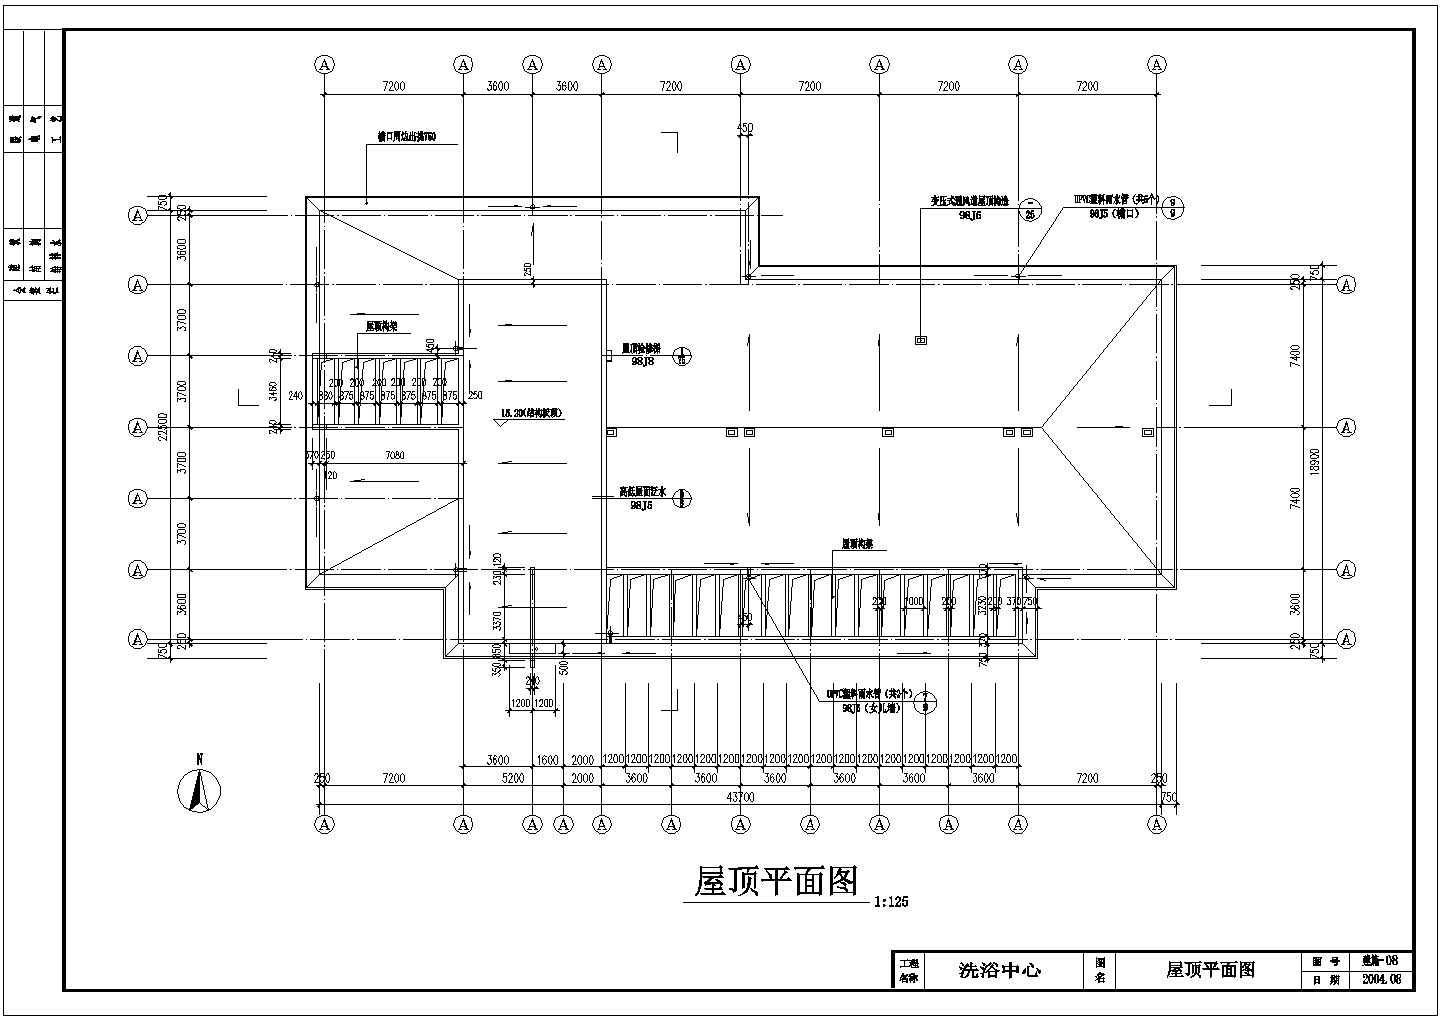 高档洗浴中心建筑设计施工图